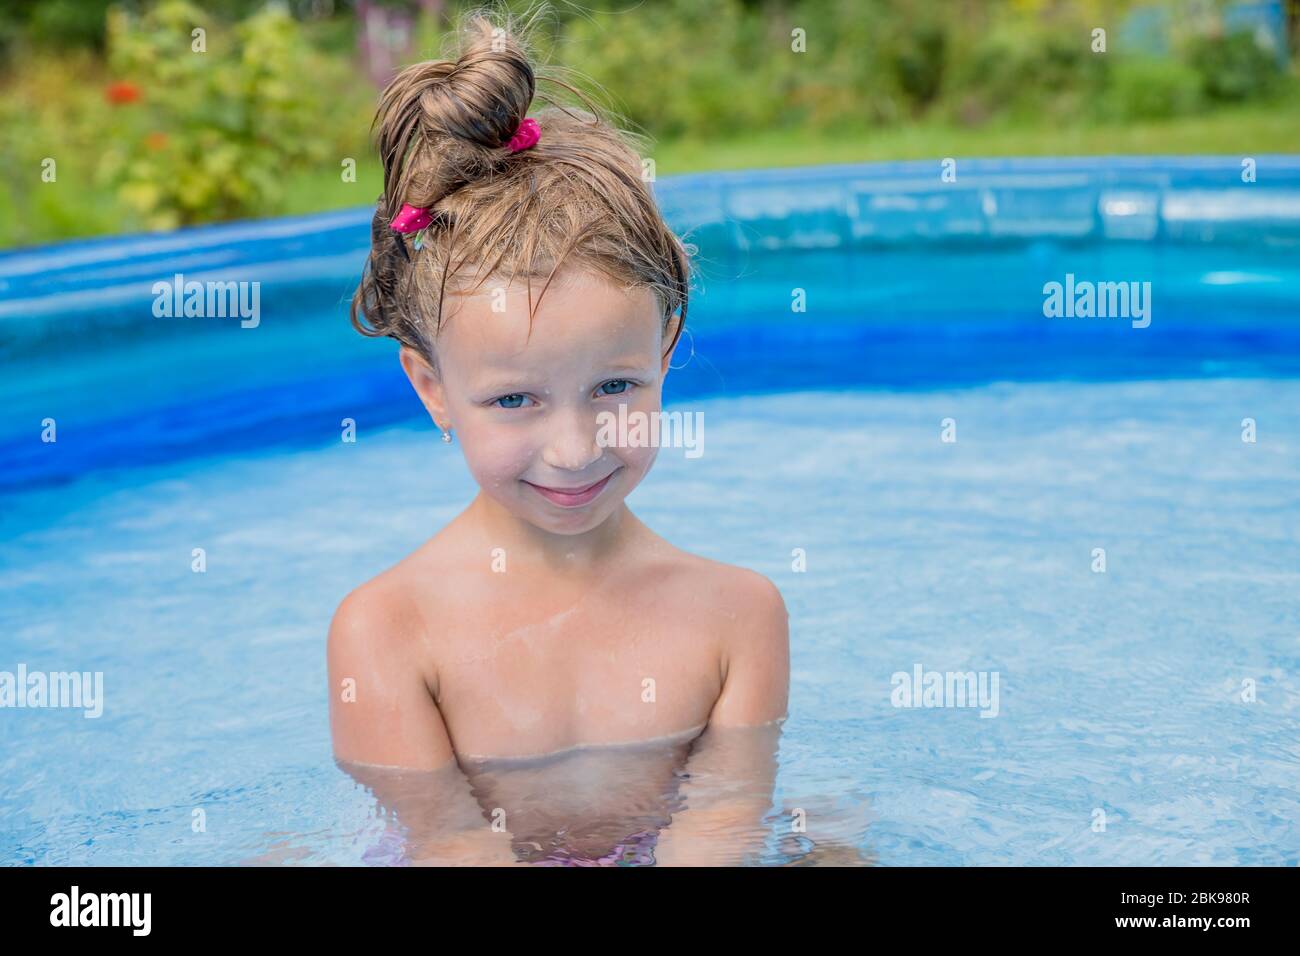 petite-fille-paligeant-dans-une-piscine-dans-un-jardin-d-t-piscine